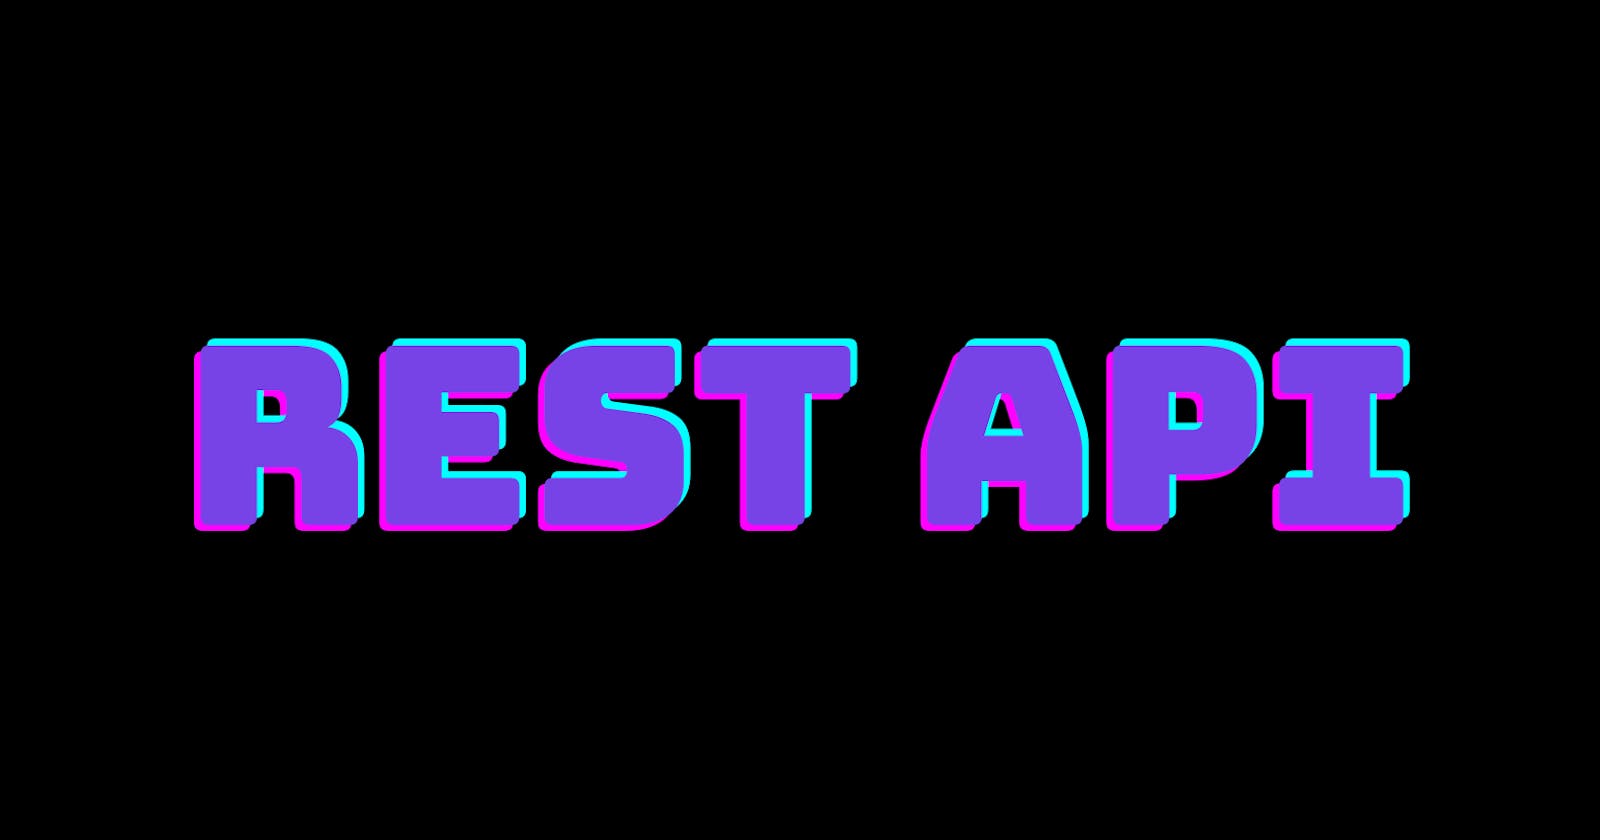 REST APIs in depth